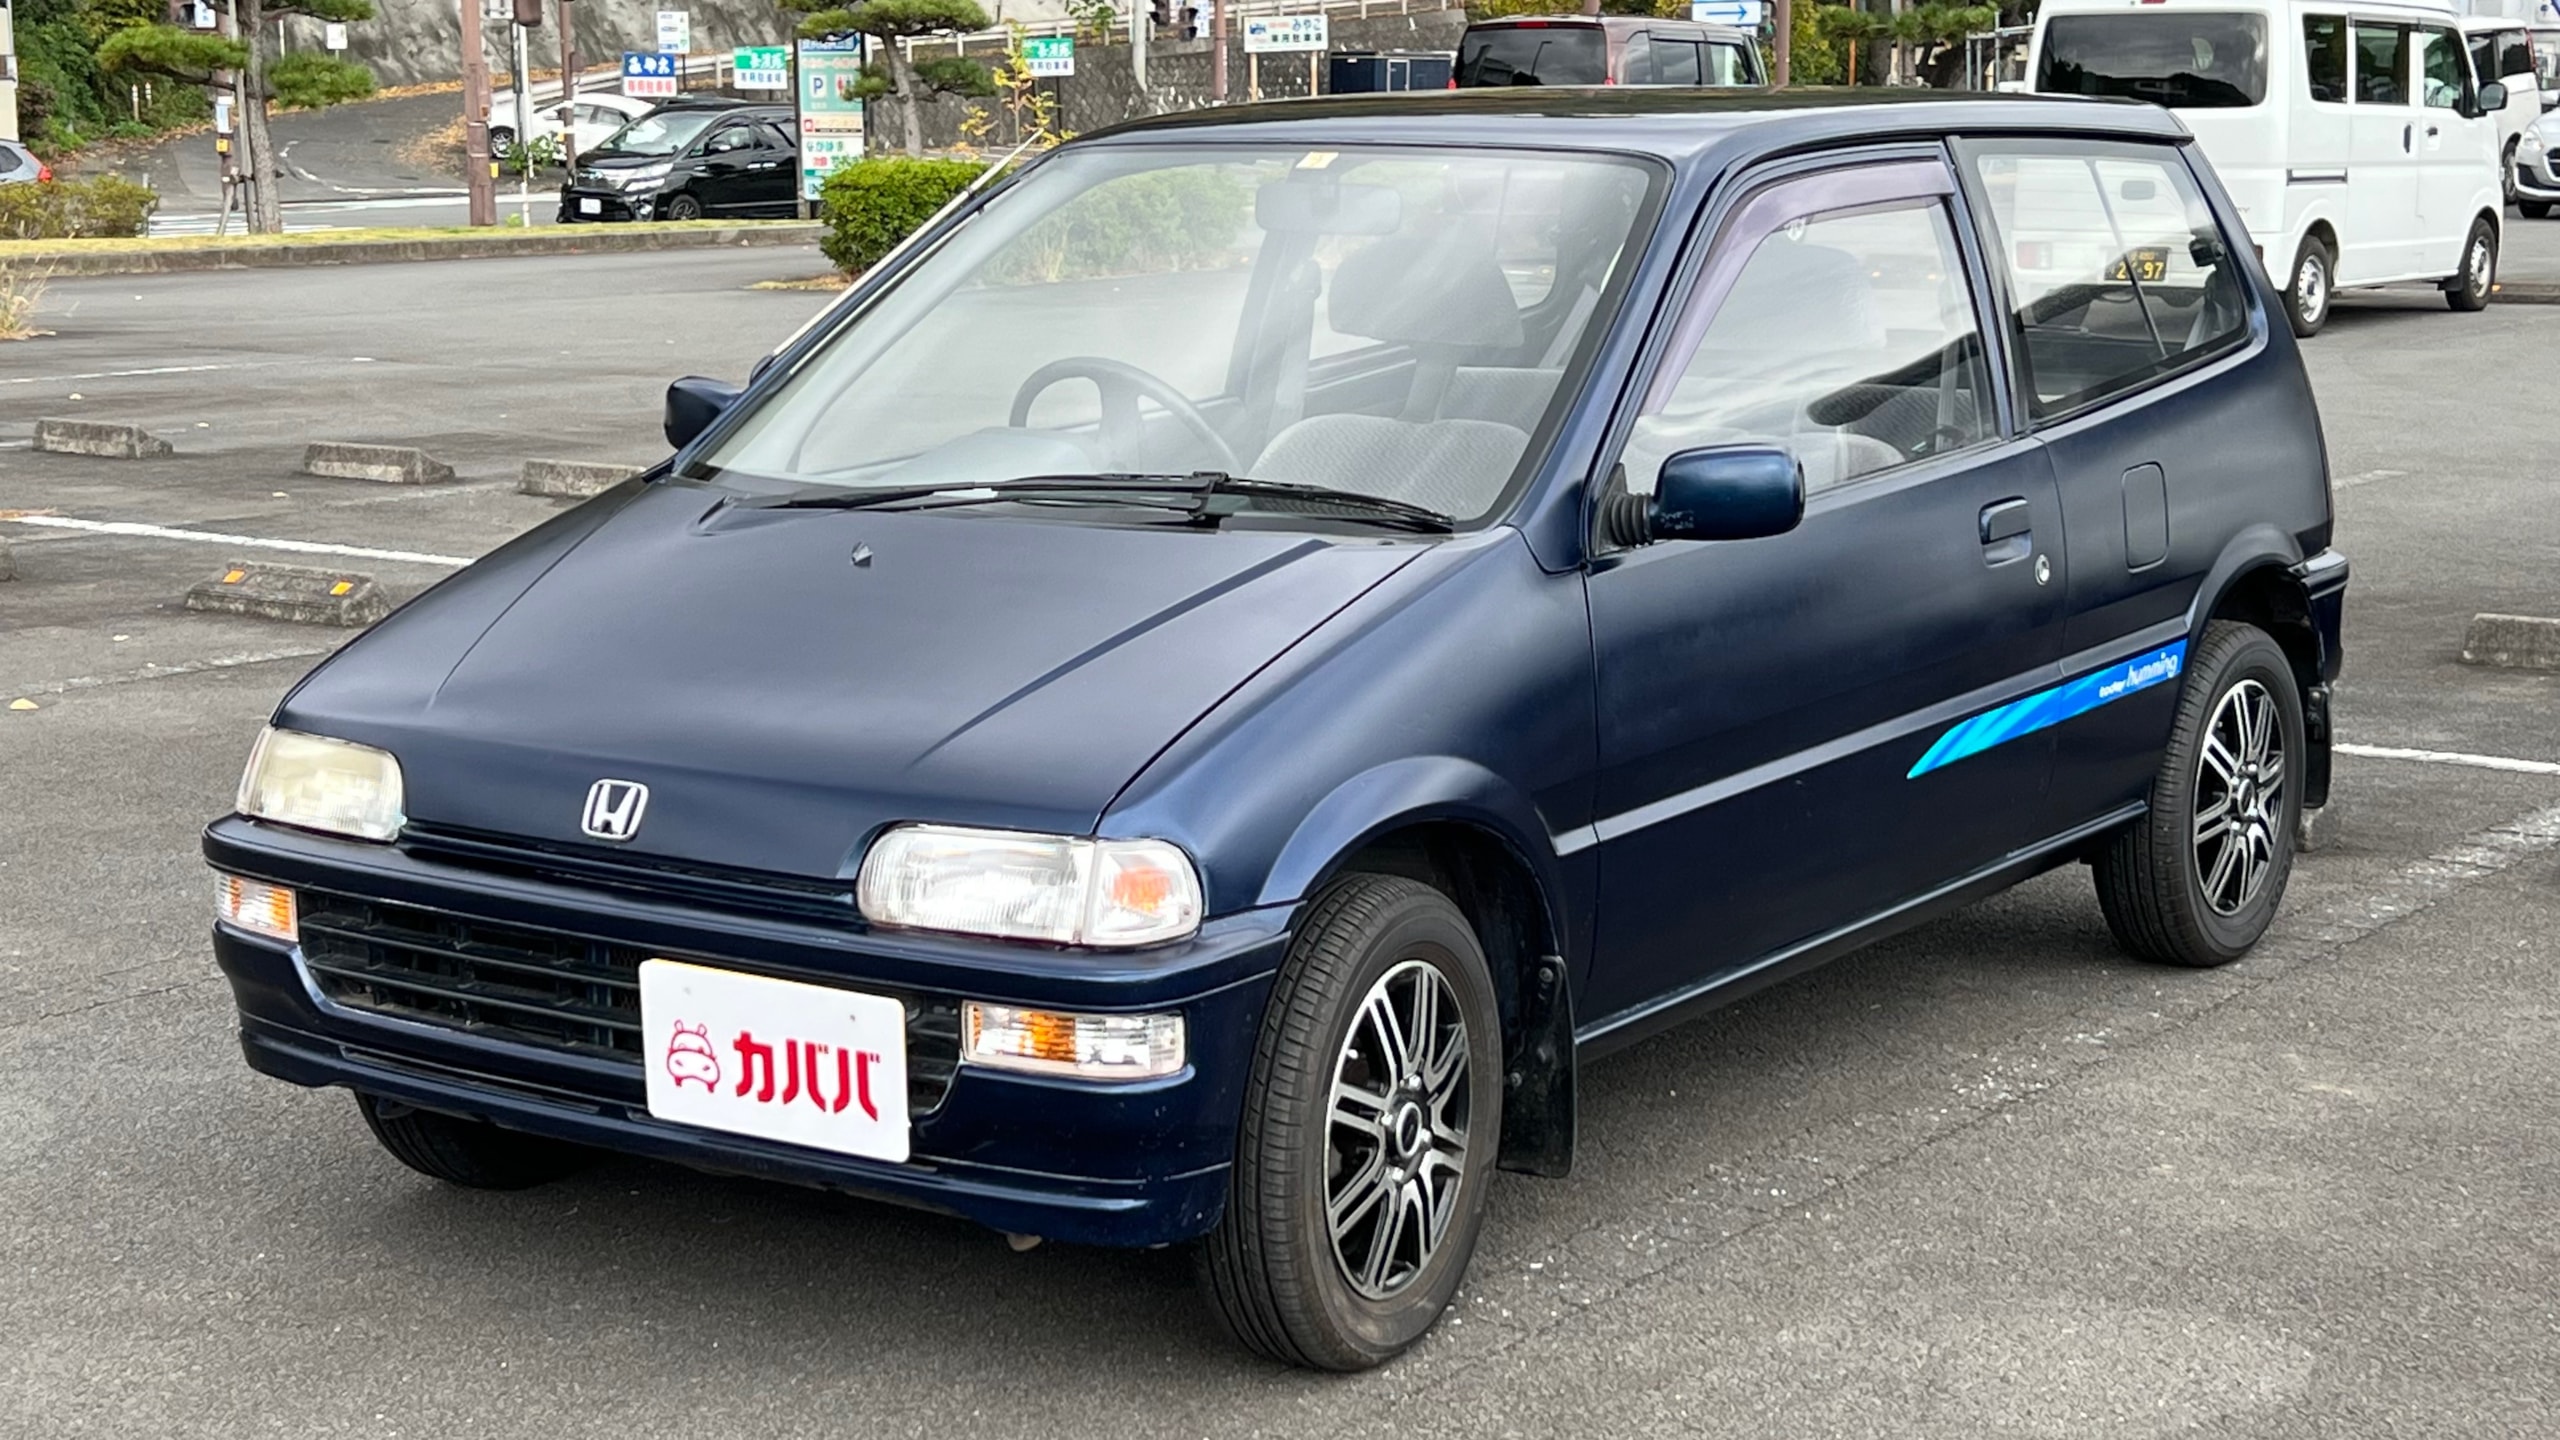 トゥデイ ハミングX(ホンダ)1995年式 30万円の中古車 - 自動車フリマ